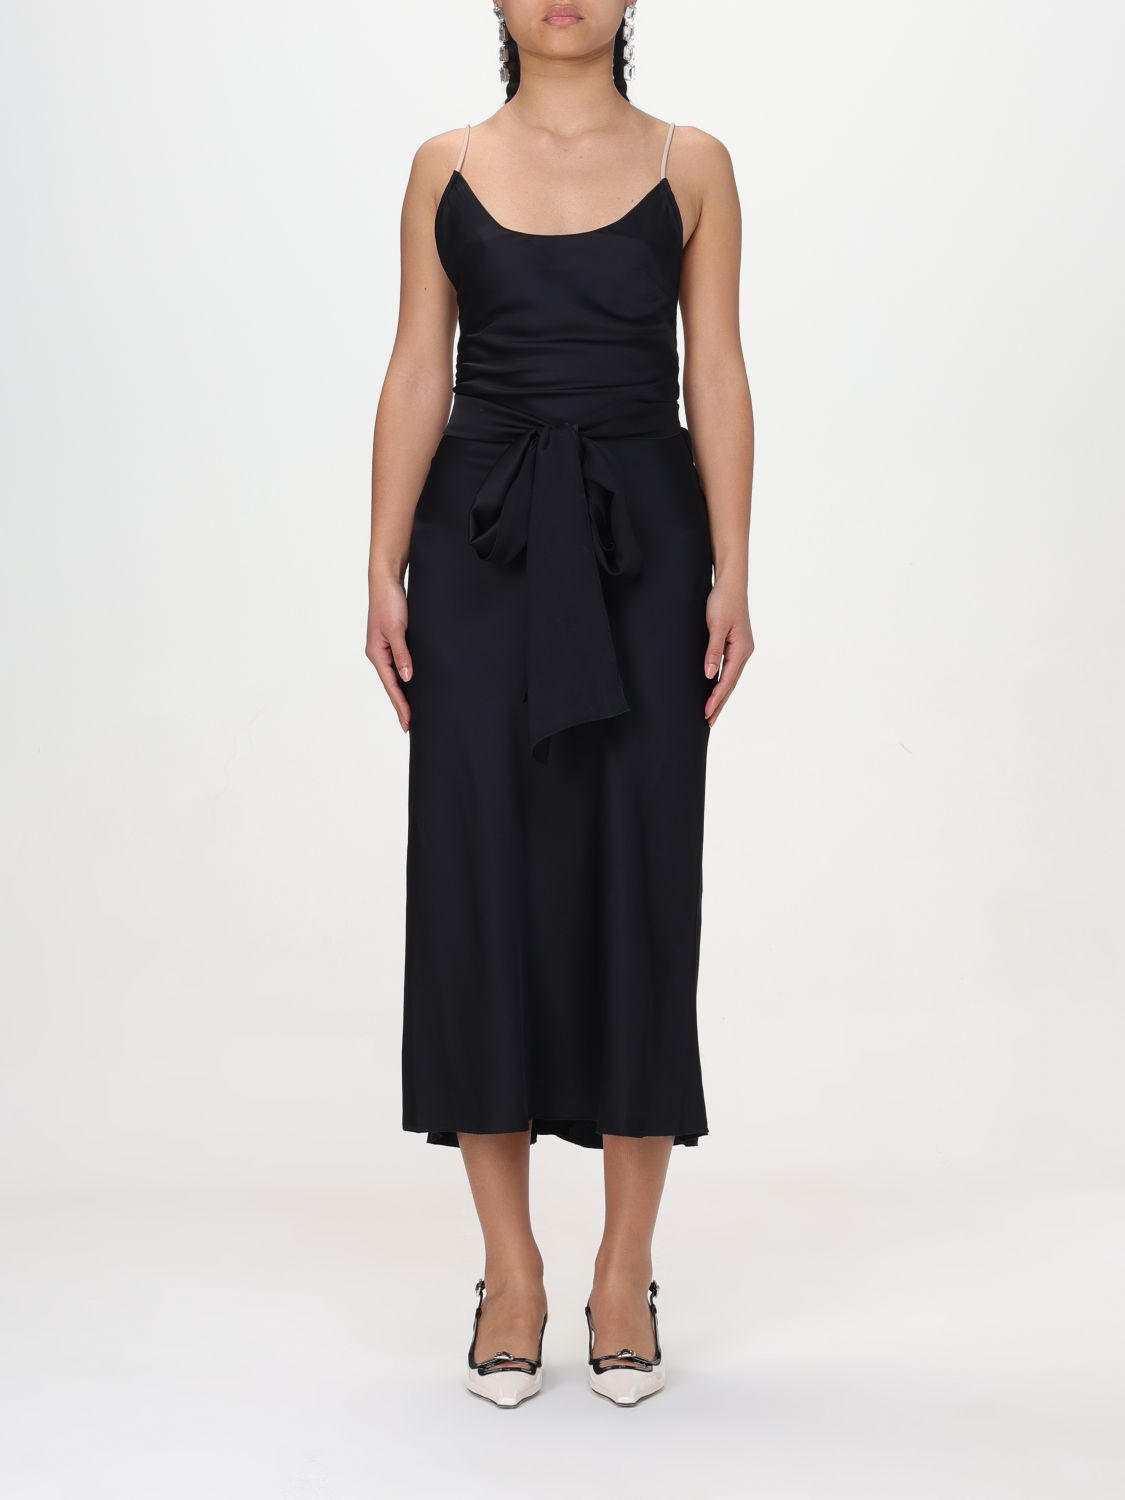 N° 21 Dress N° 21 Woman colour Black